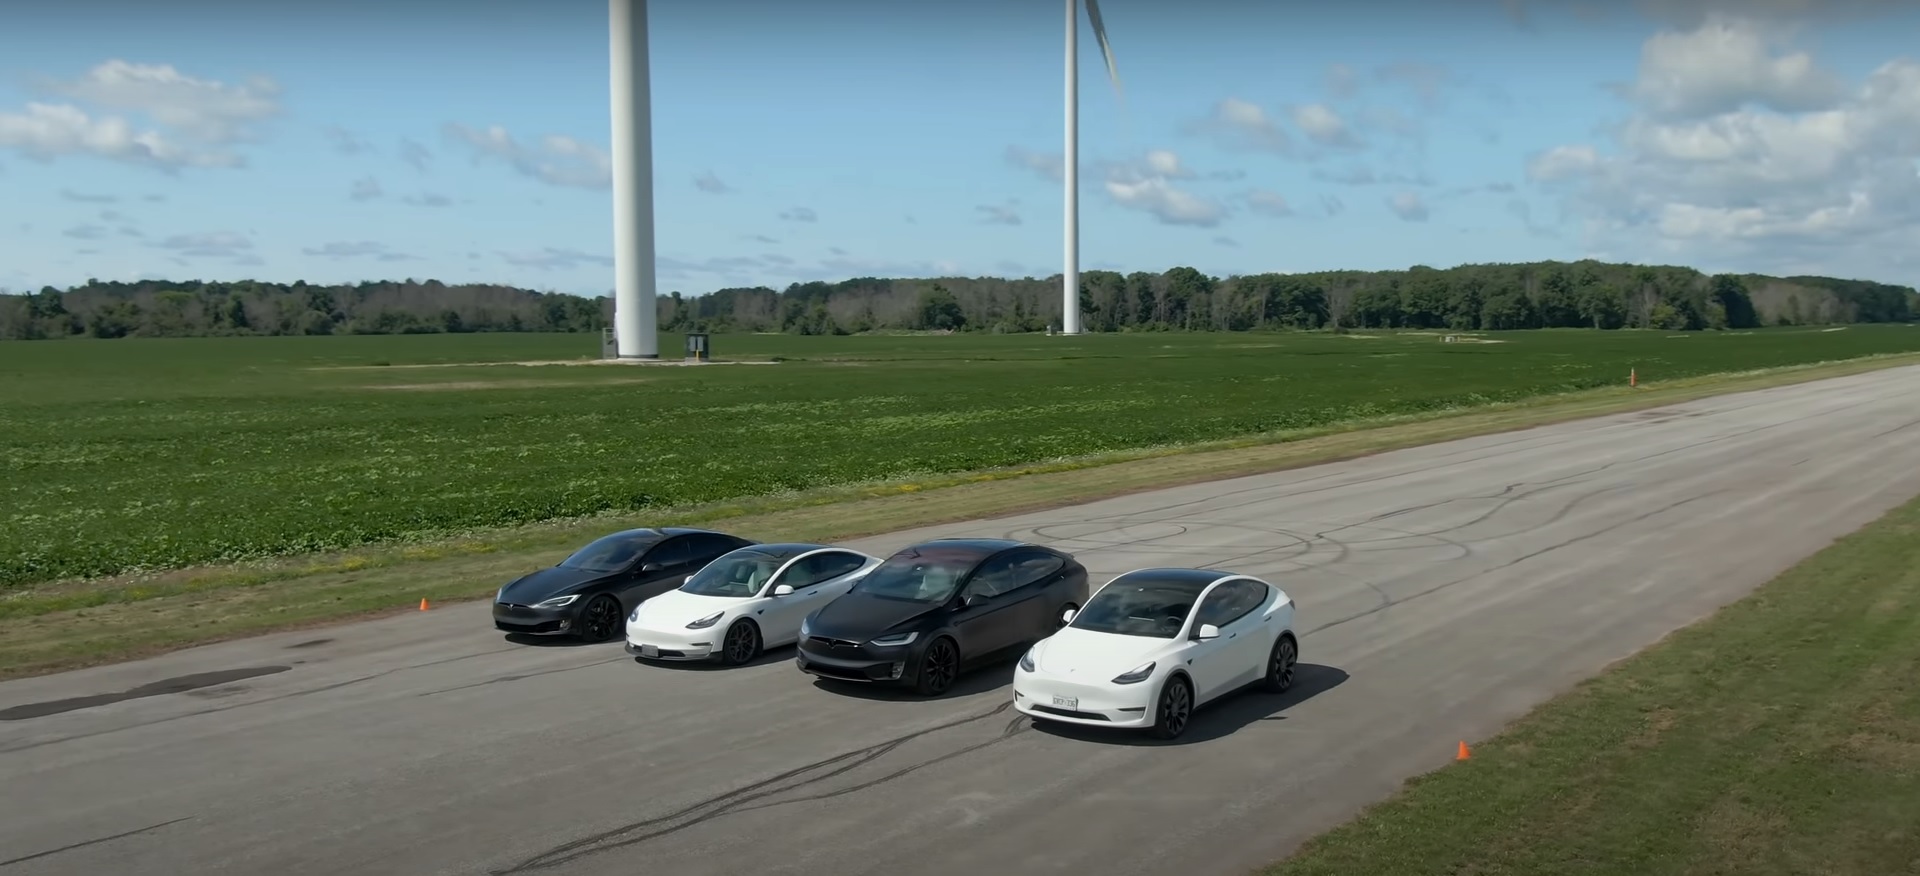 Весь флот Tesla «S3XY» Performance сразился в тотальной битве за сопротивление